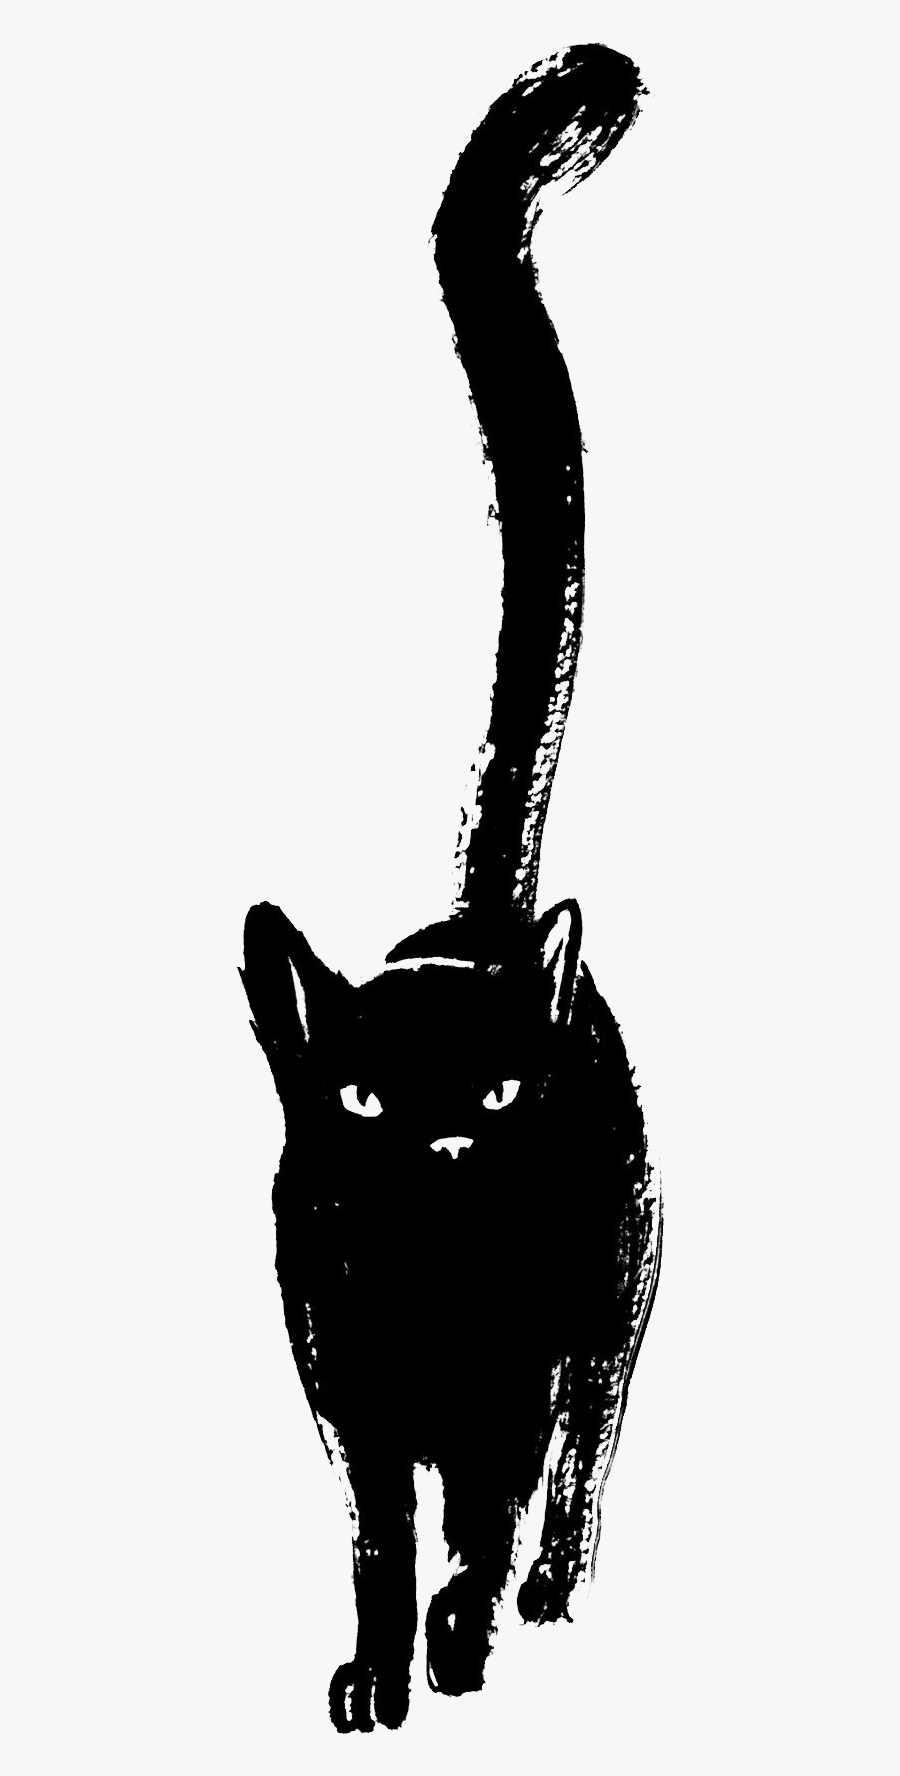 Sketch Panther Black Drawing Cat Free Transparent Image - Black Cat Sketch Png, Transparent Clipart